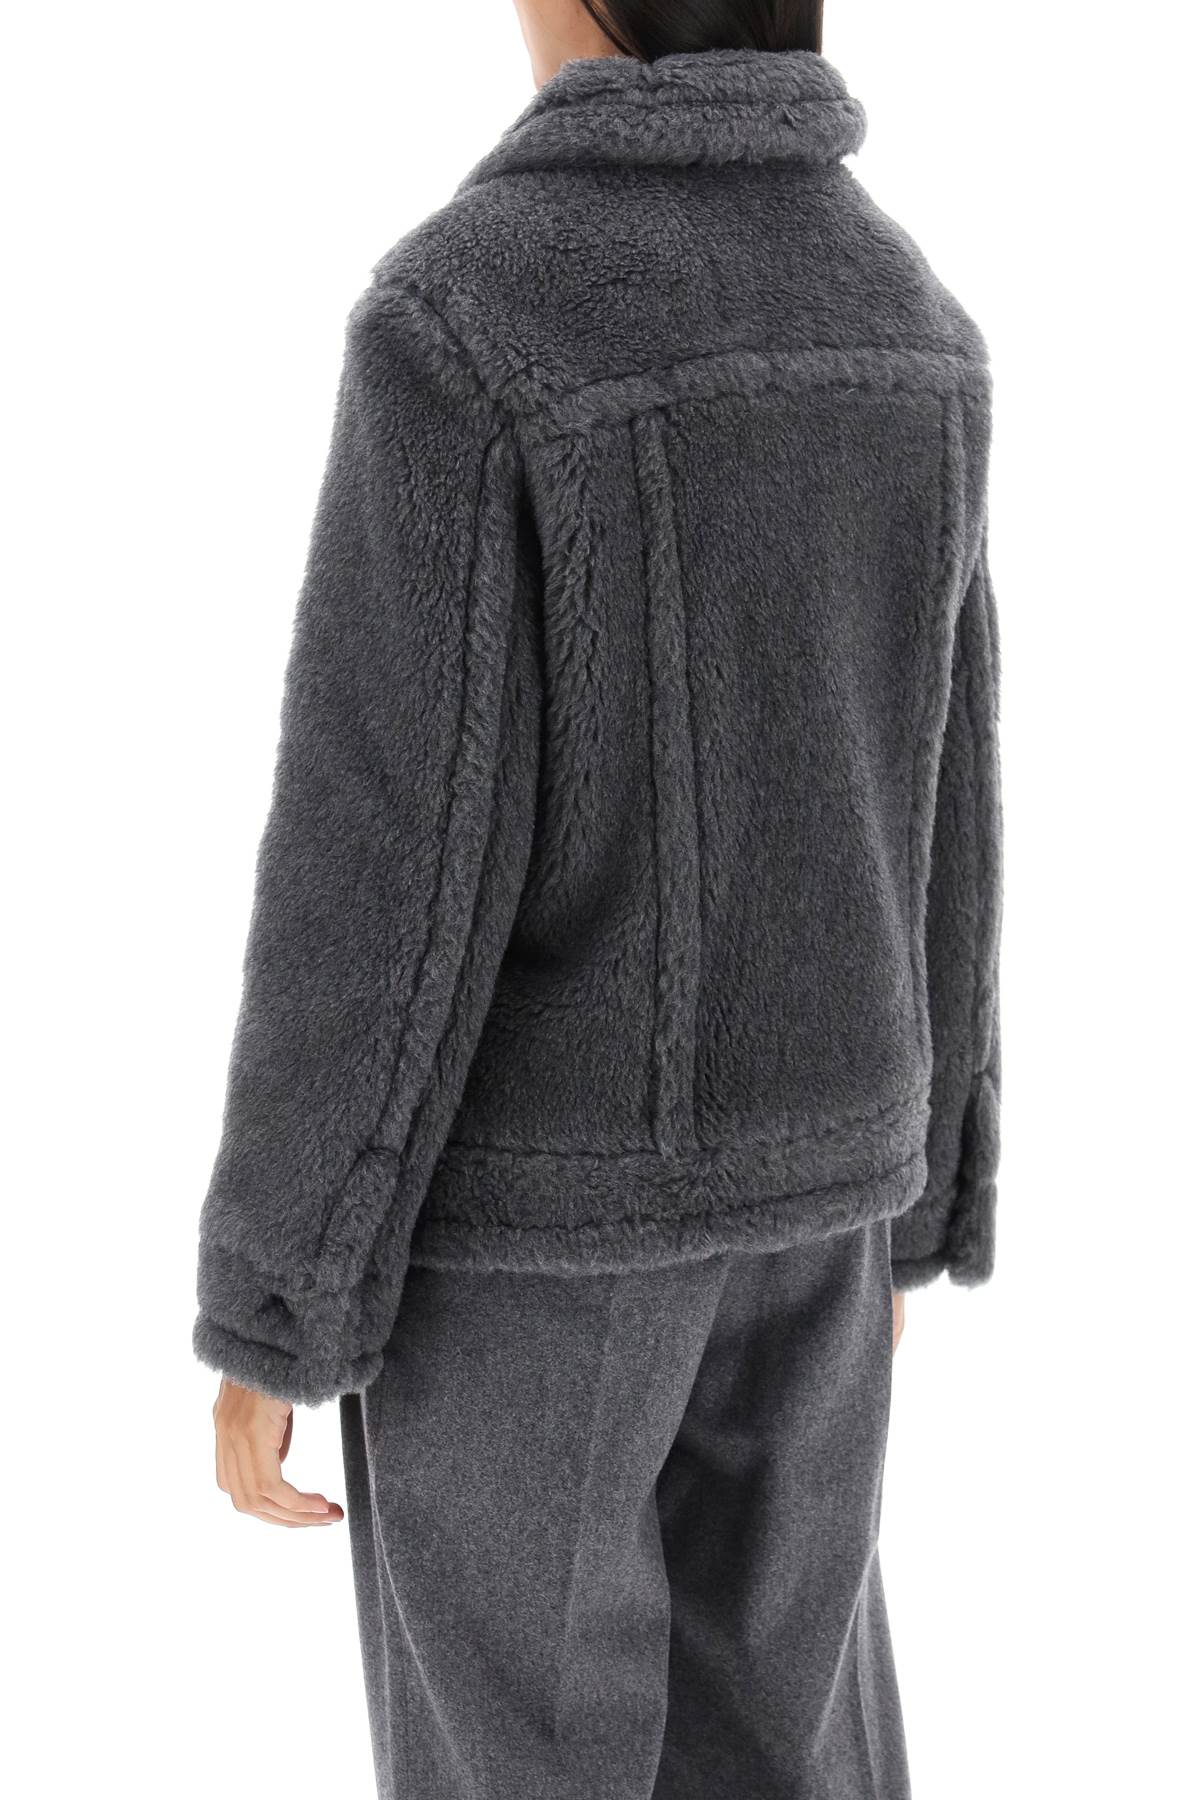 Shop Max Mara 'teddino1' Wool And Alpaca Jacket In Grey